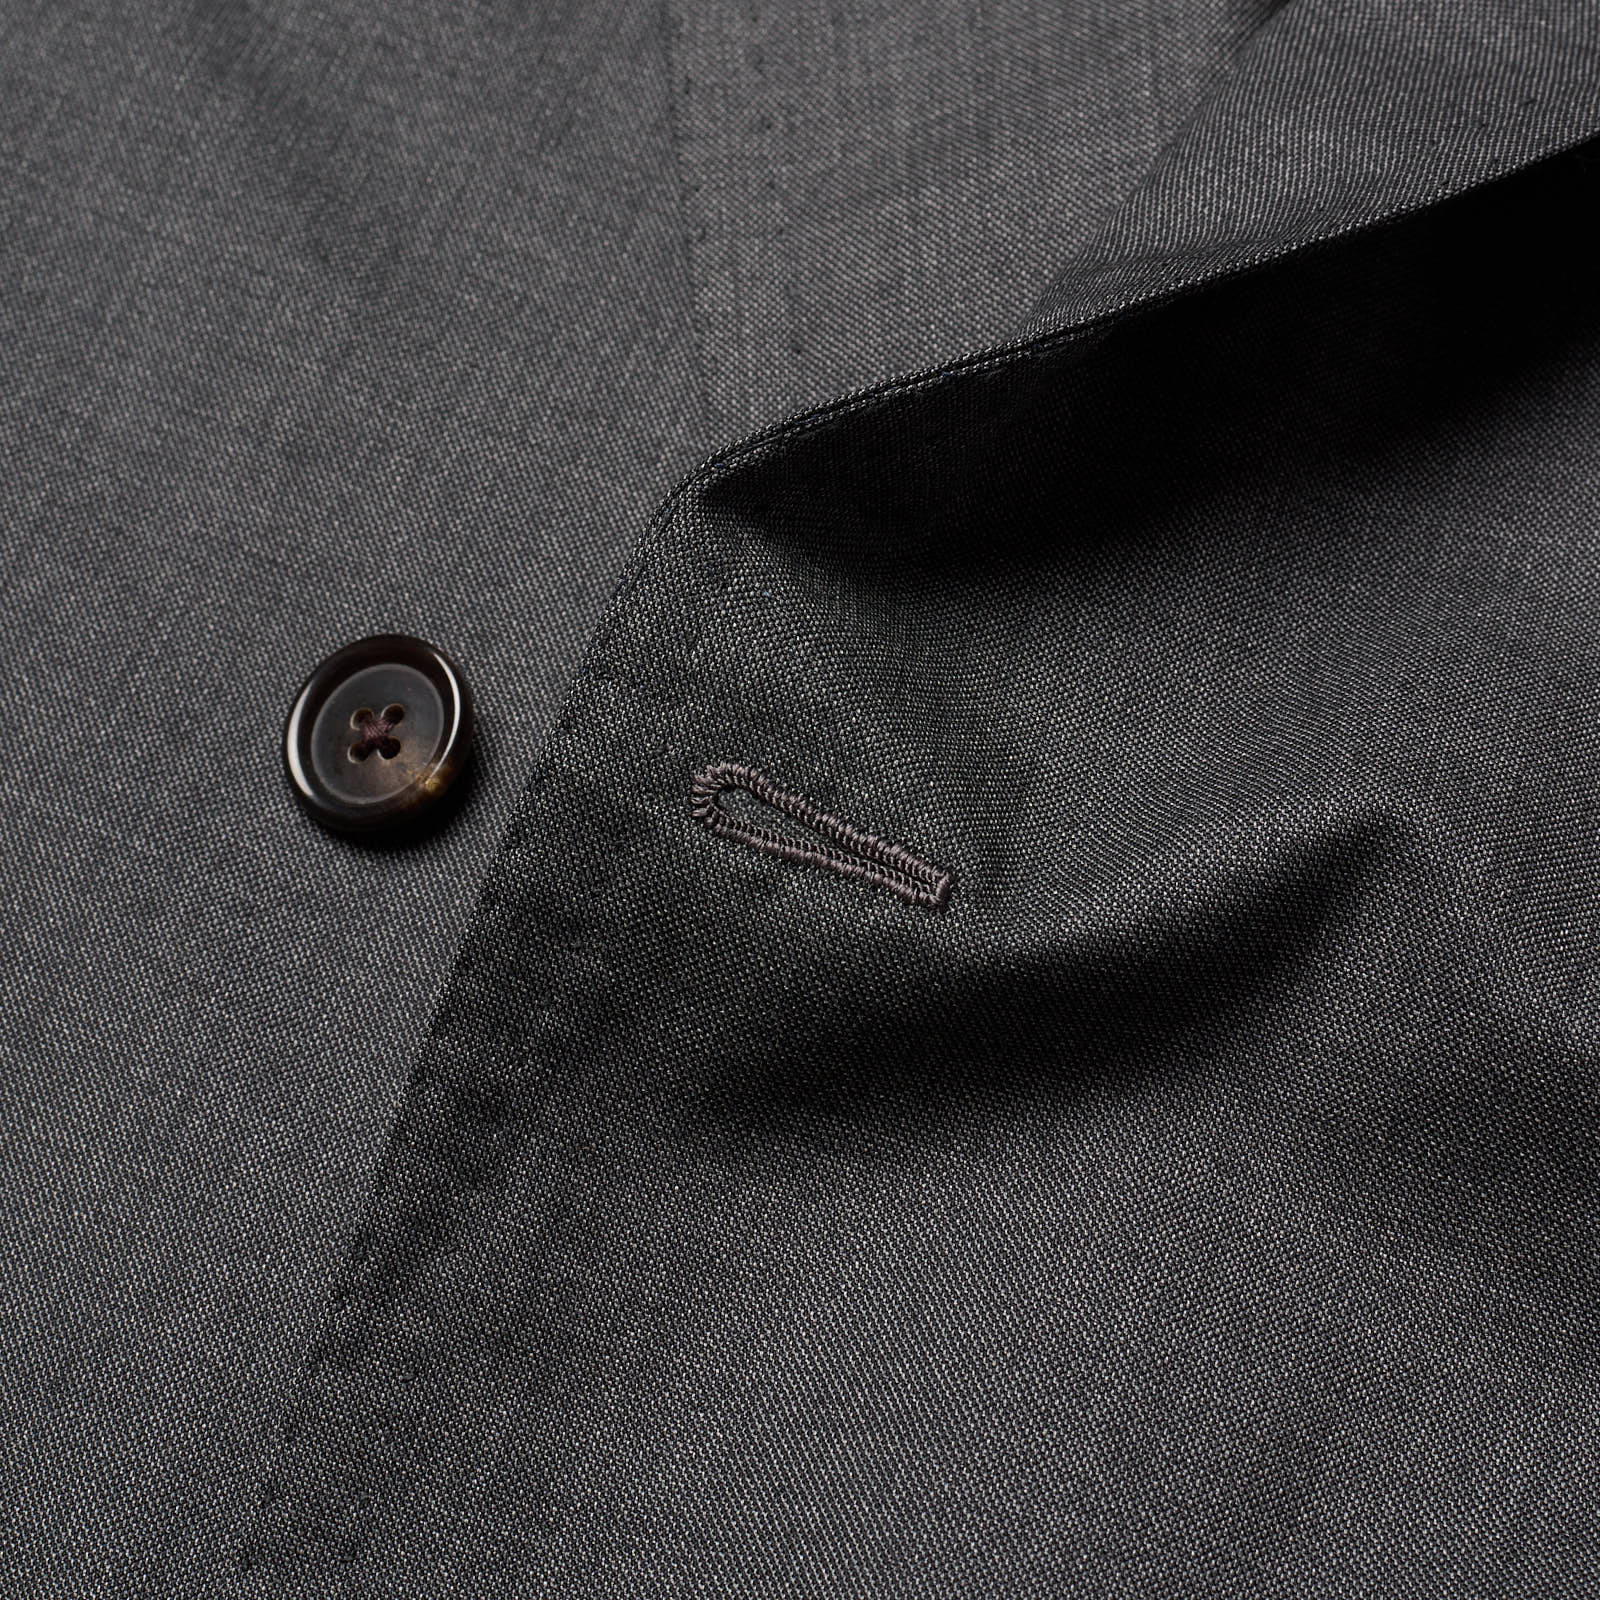 Sartoria SOLITO Napoli Bespoke Gray Handmade DB Jacket EU 50 NEW US 40